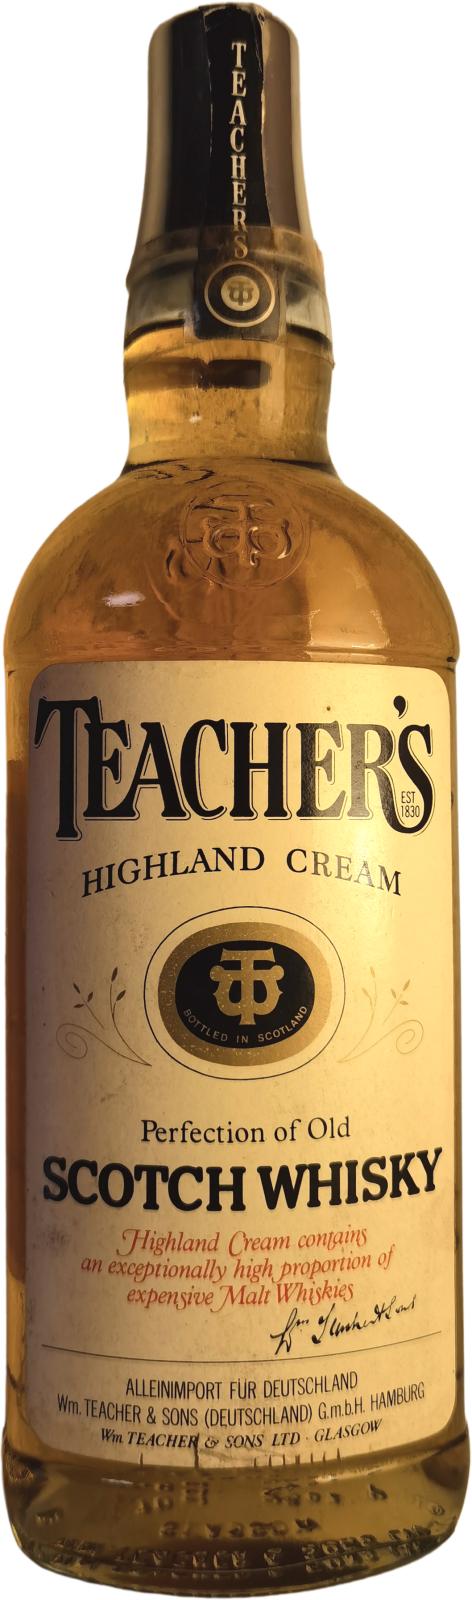 Teacher's Highland Cream Alleinimport fur Deutschland 40% 700ml